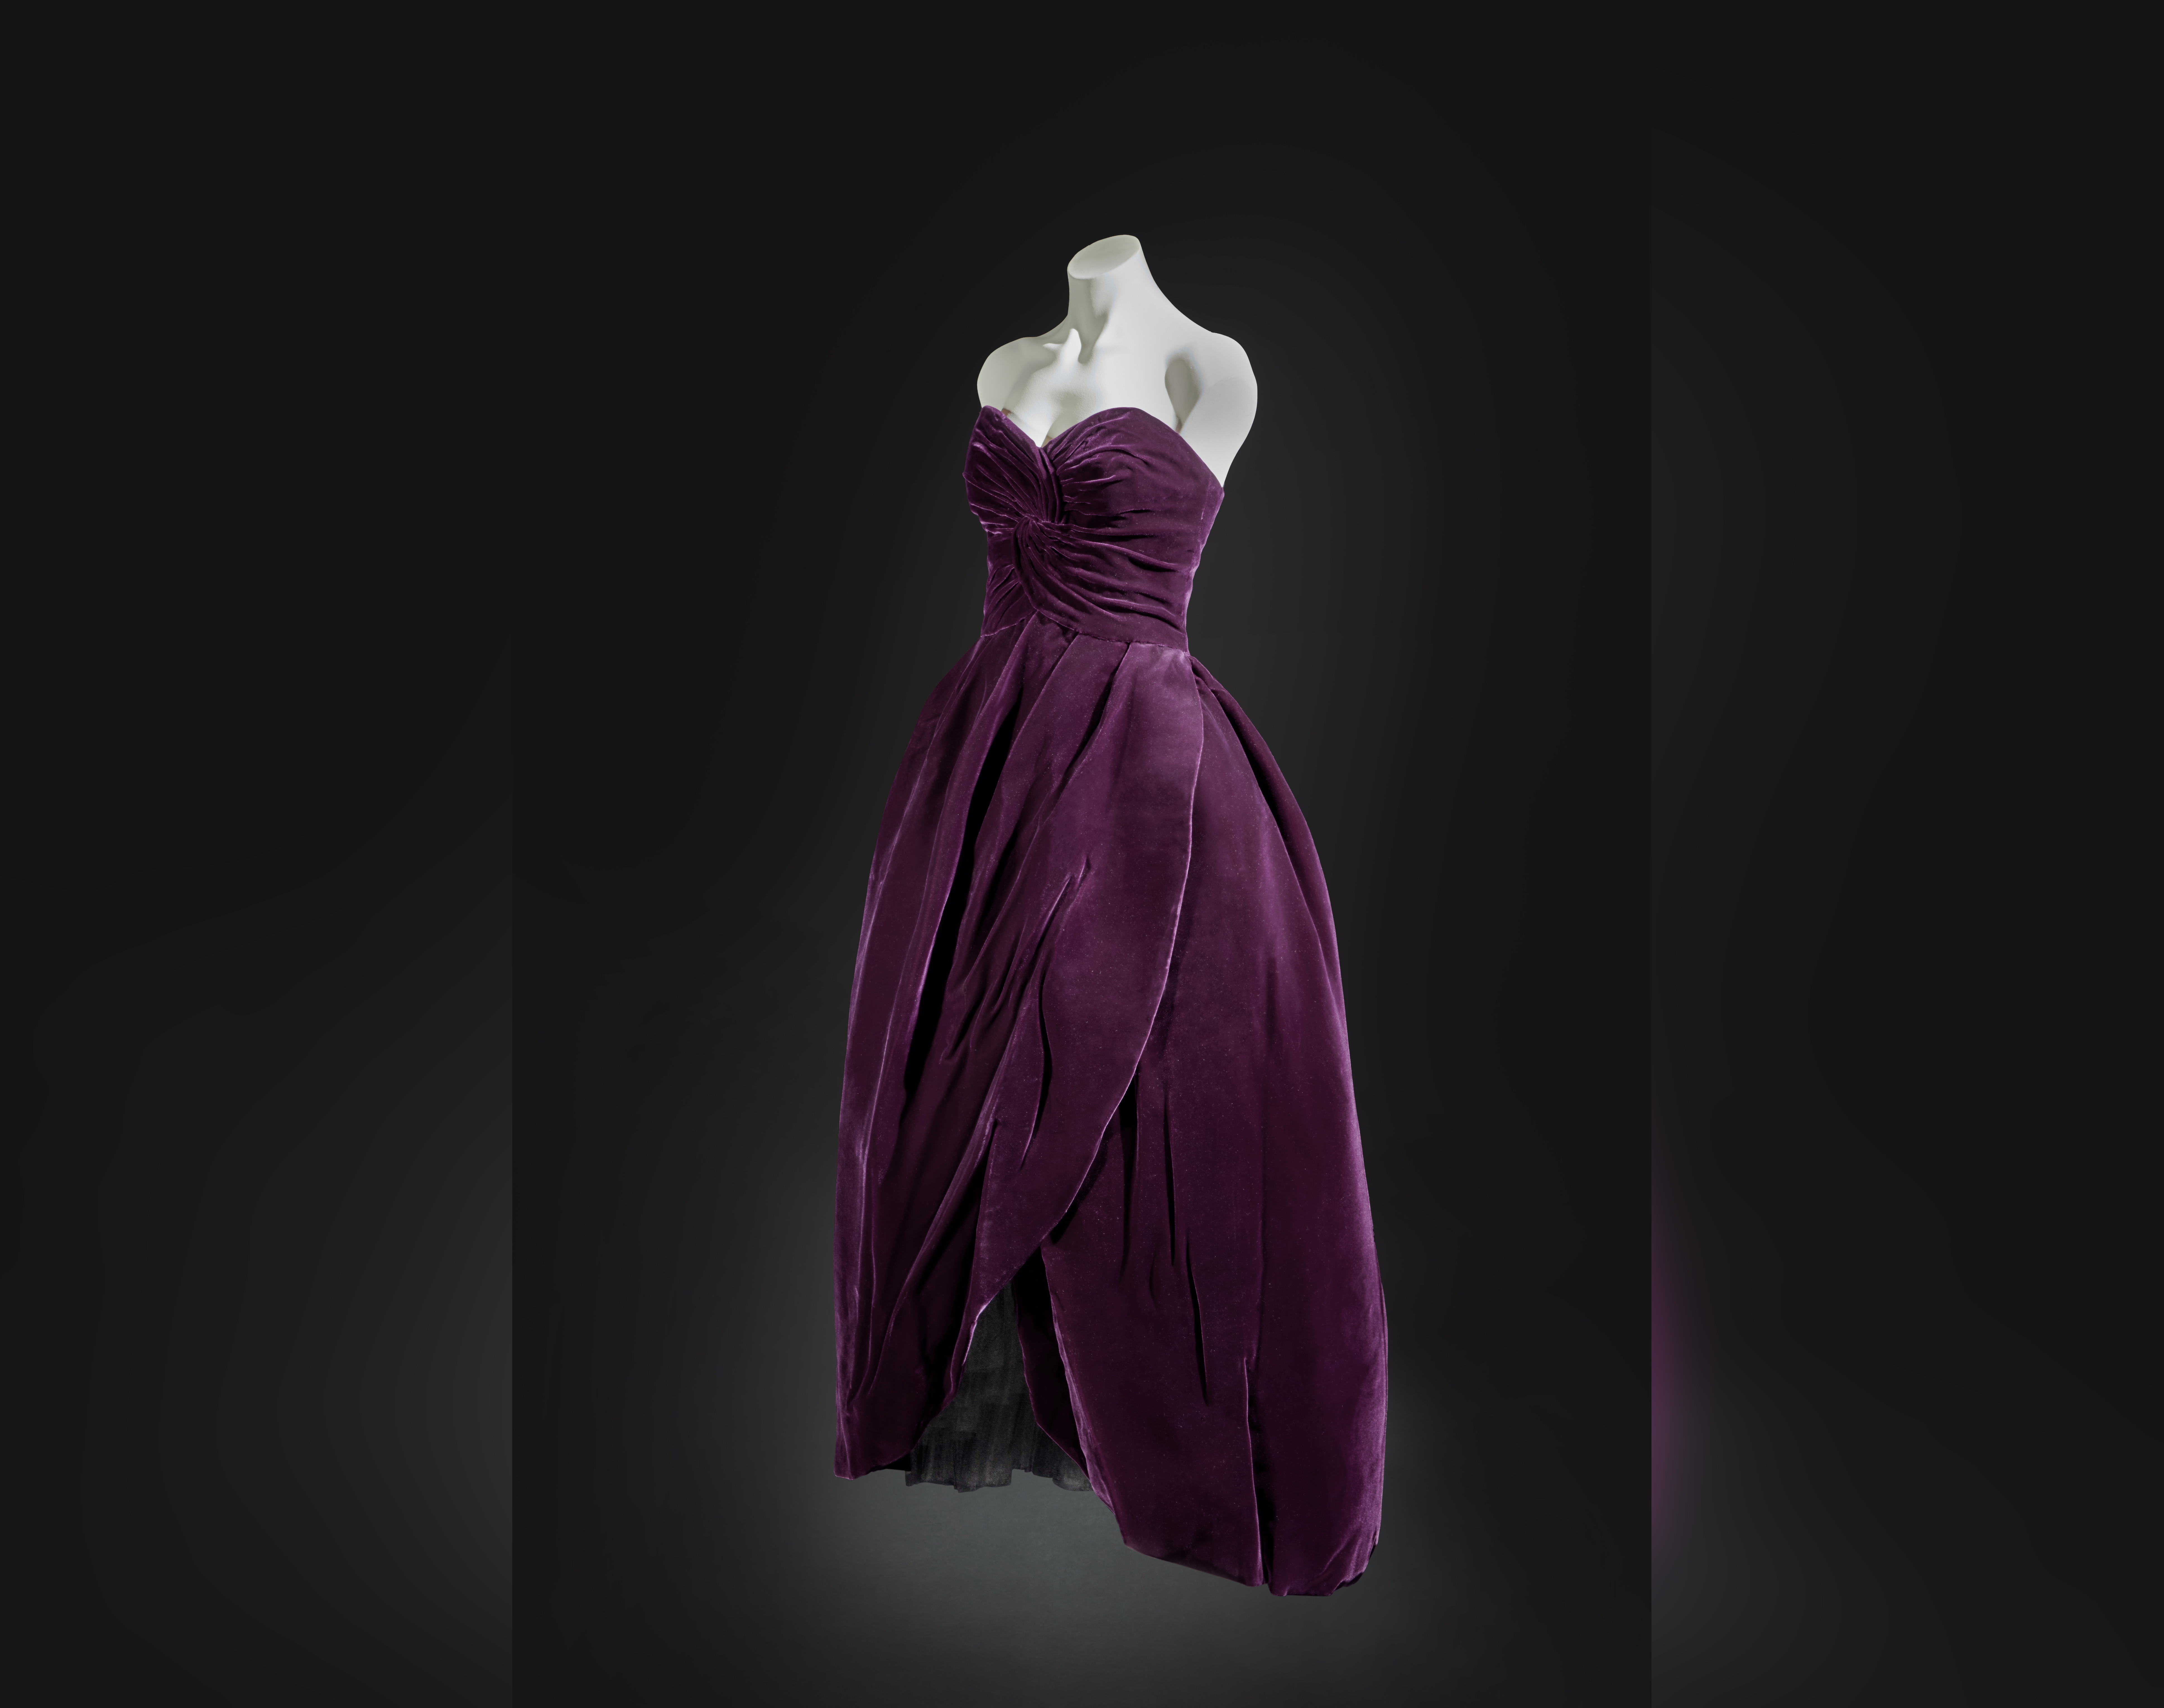 Вечернее платье принцессы Дианы продали на аукционе за рекордные 604,8 тысячи долларов